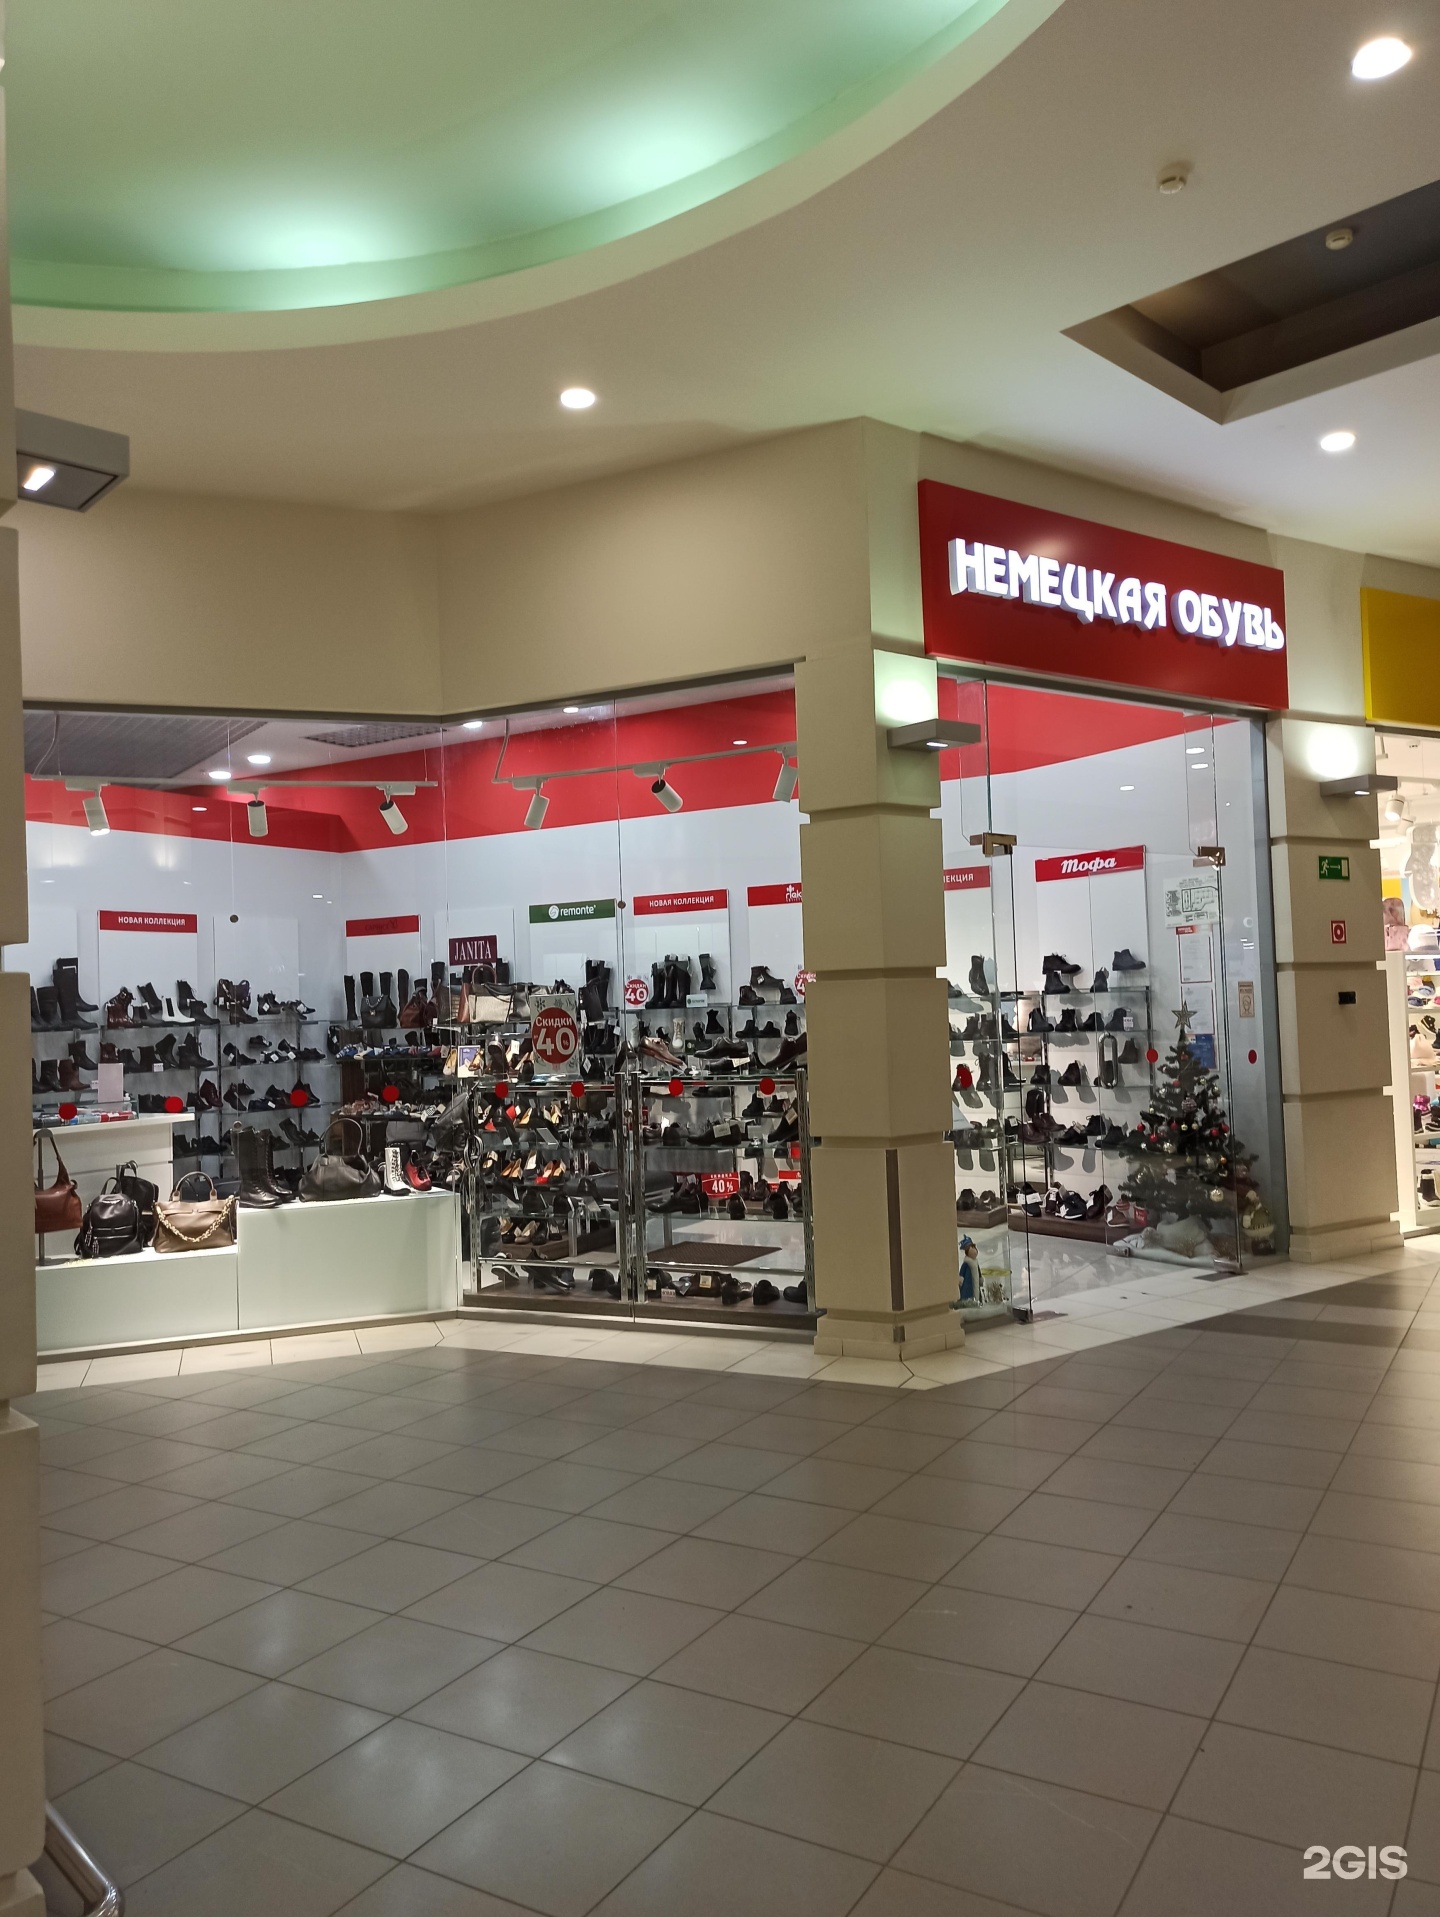 Купить обувь в тольятти. Салон немецкой обуви. Германия магазины обуви. Немецкая обувь на Дзержинского. Магазин немецкой обуви в Коламбусе.